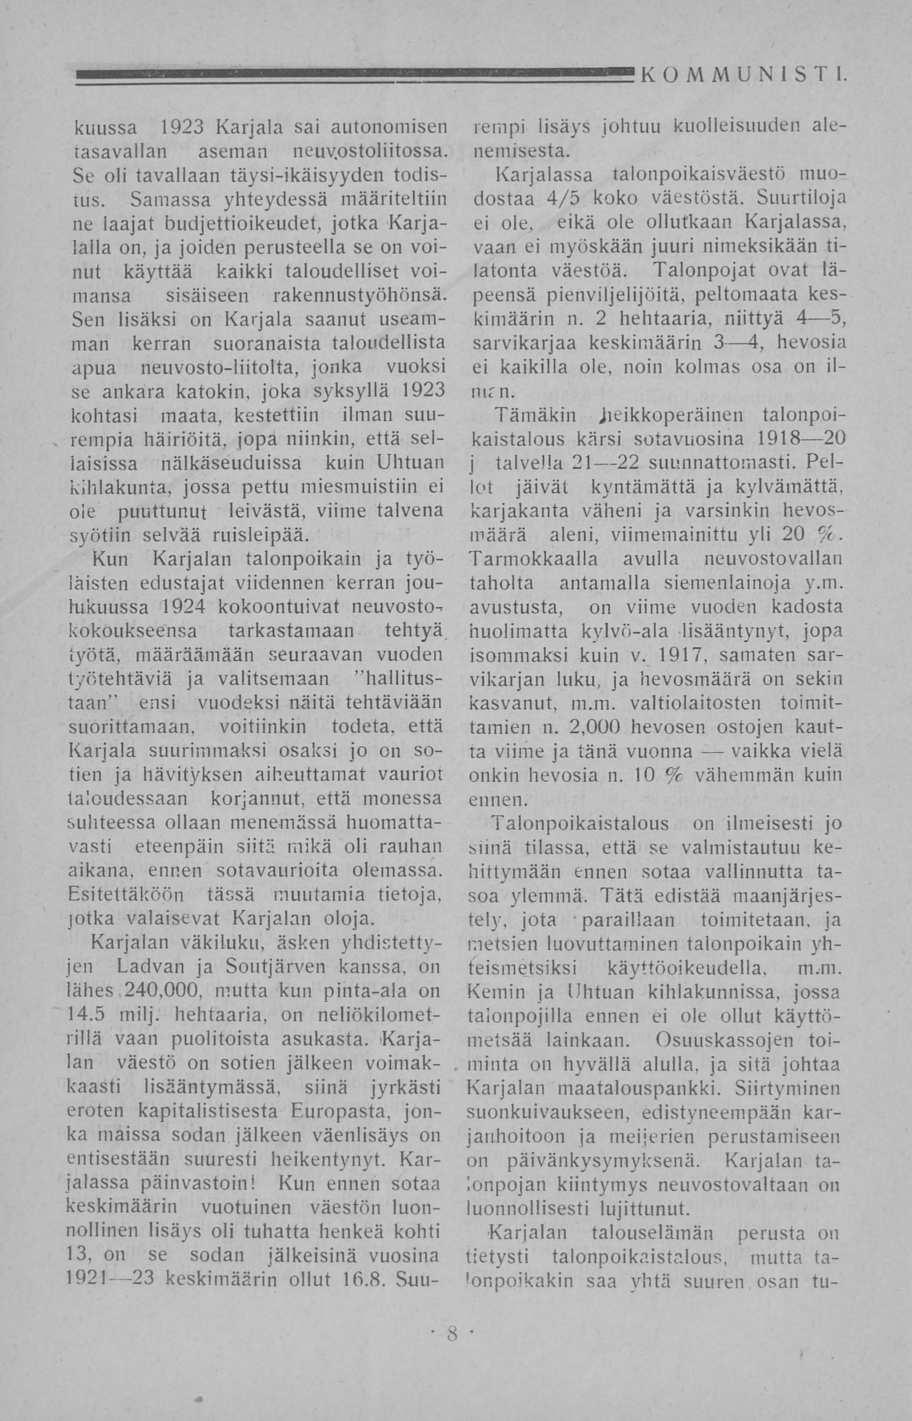 KOMMUNISTI. kuussa 1923 Karjala sai autonomisen tasavallan aseman neuvostoliitossa. Se oli tavallaan täysi-ikäisyyden todistus.